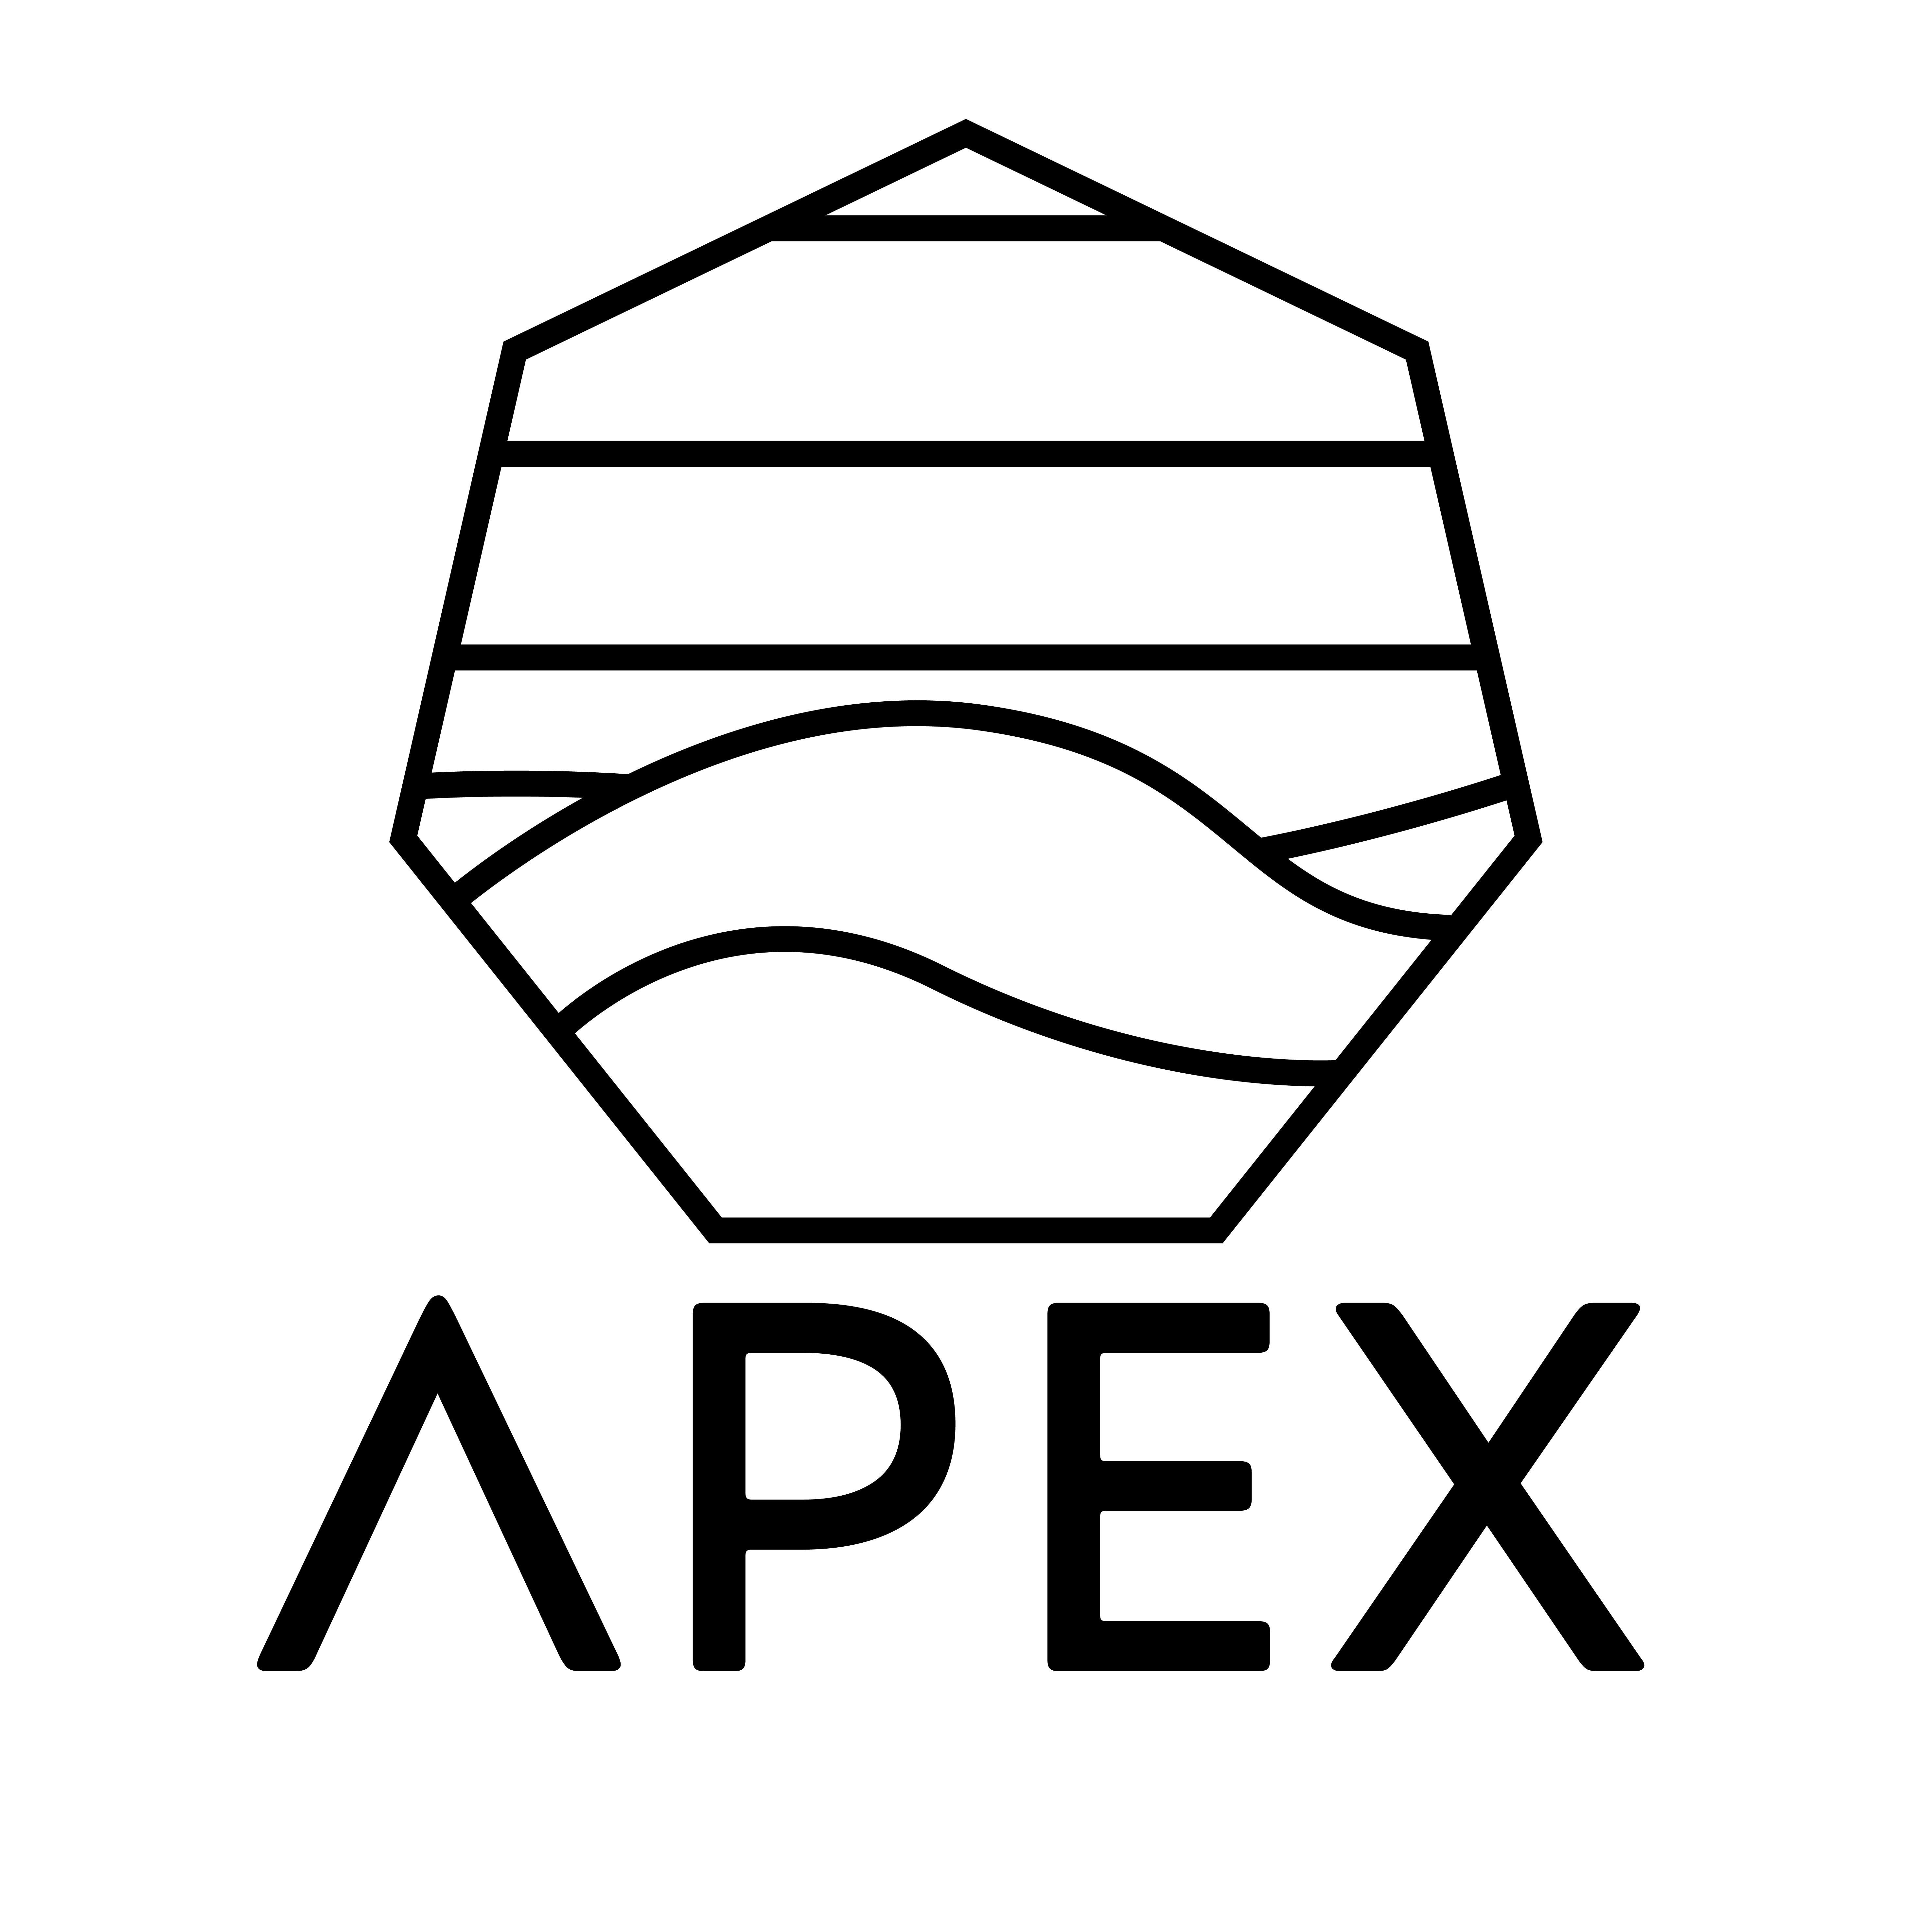 Apex logo design